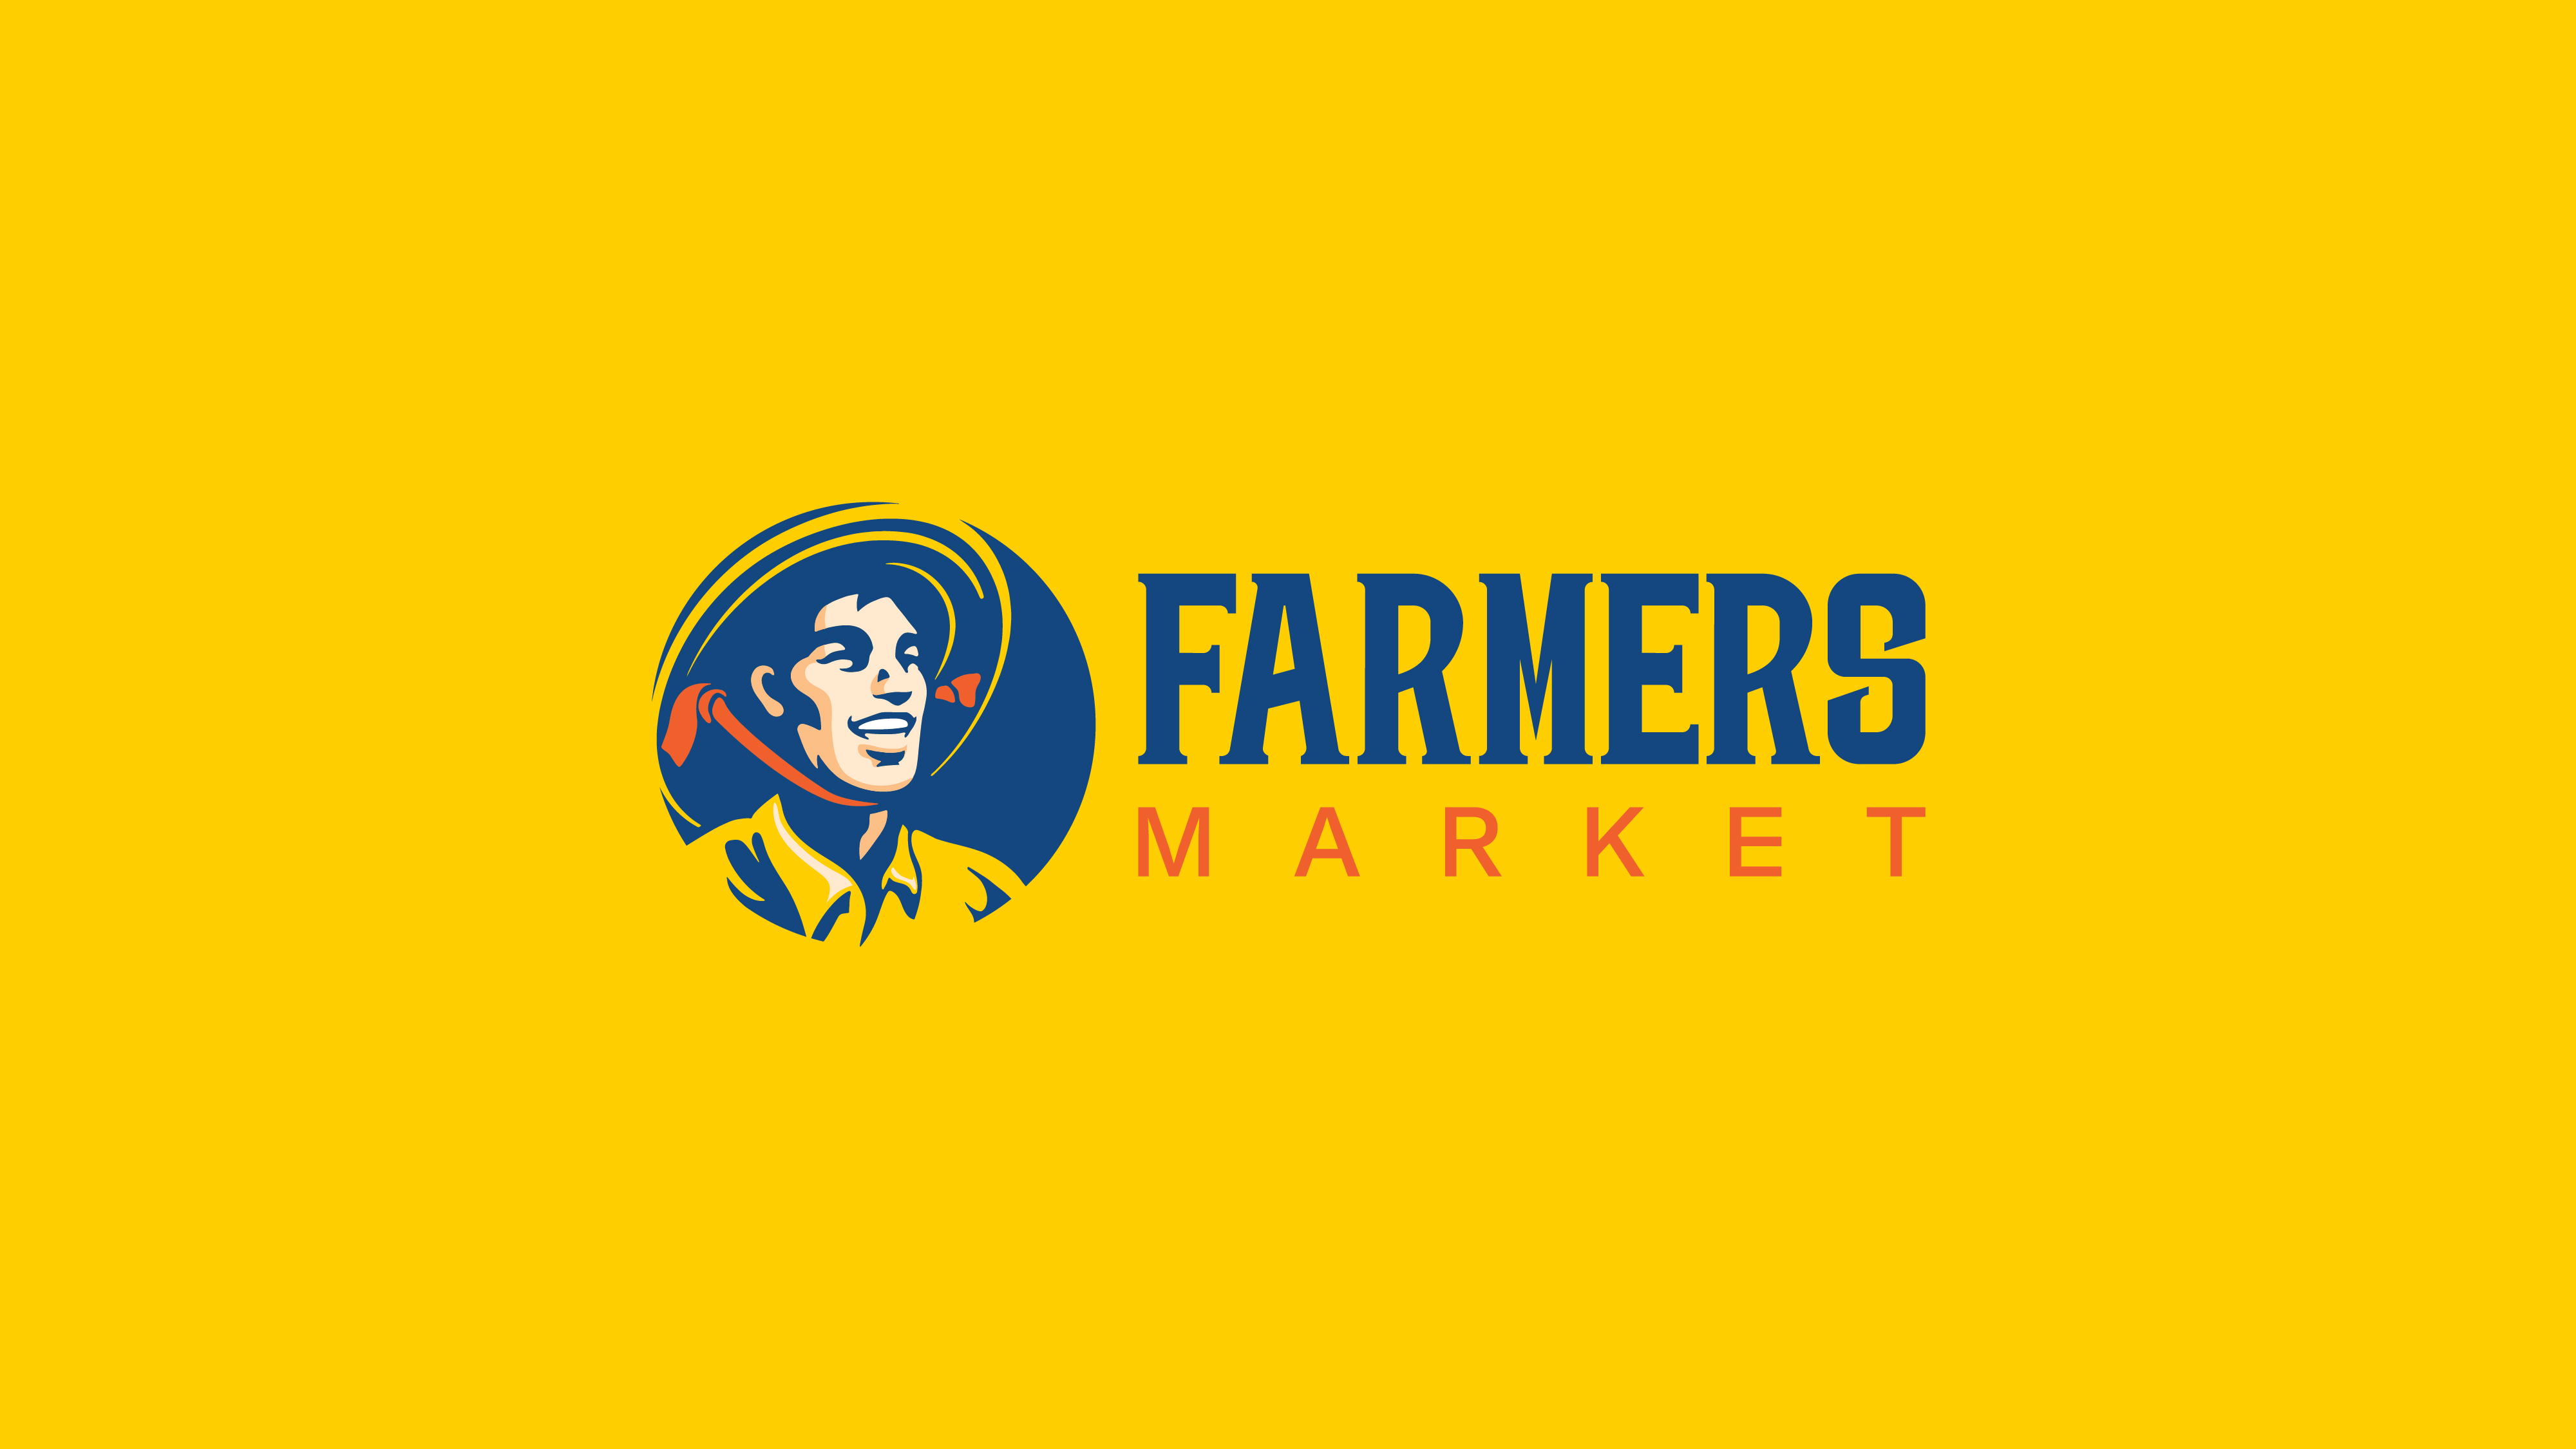 Farmers Market Brand Design Concept